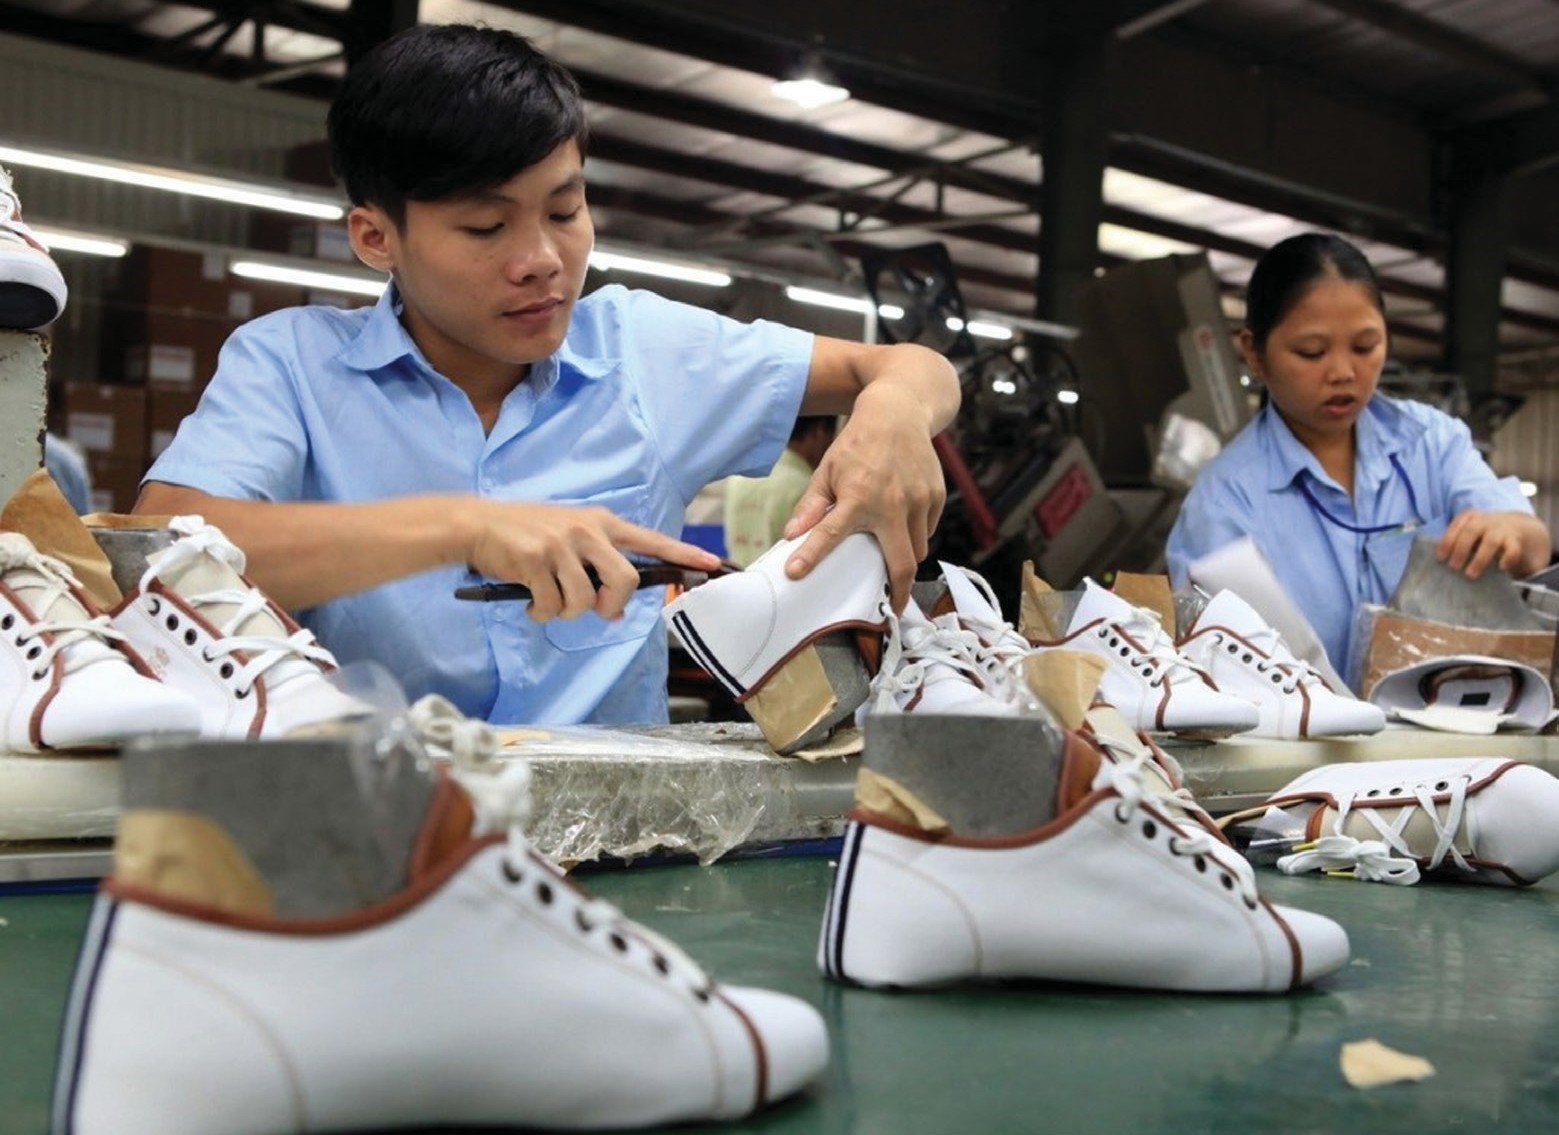 Кроссовки производства вьетнам. Обувь вьетнамцев. Промышленность Вьетнама обувь. Производство обуви. Обувь вьетнамки из Вьетнама.